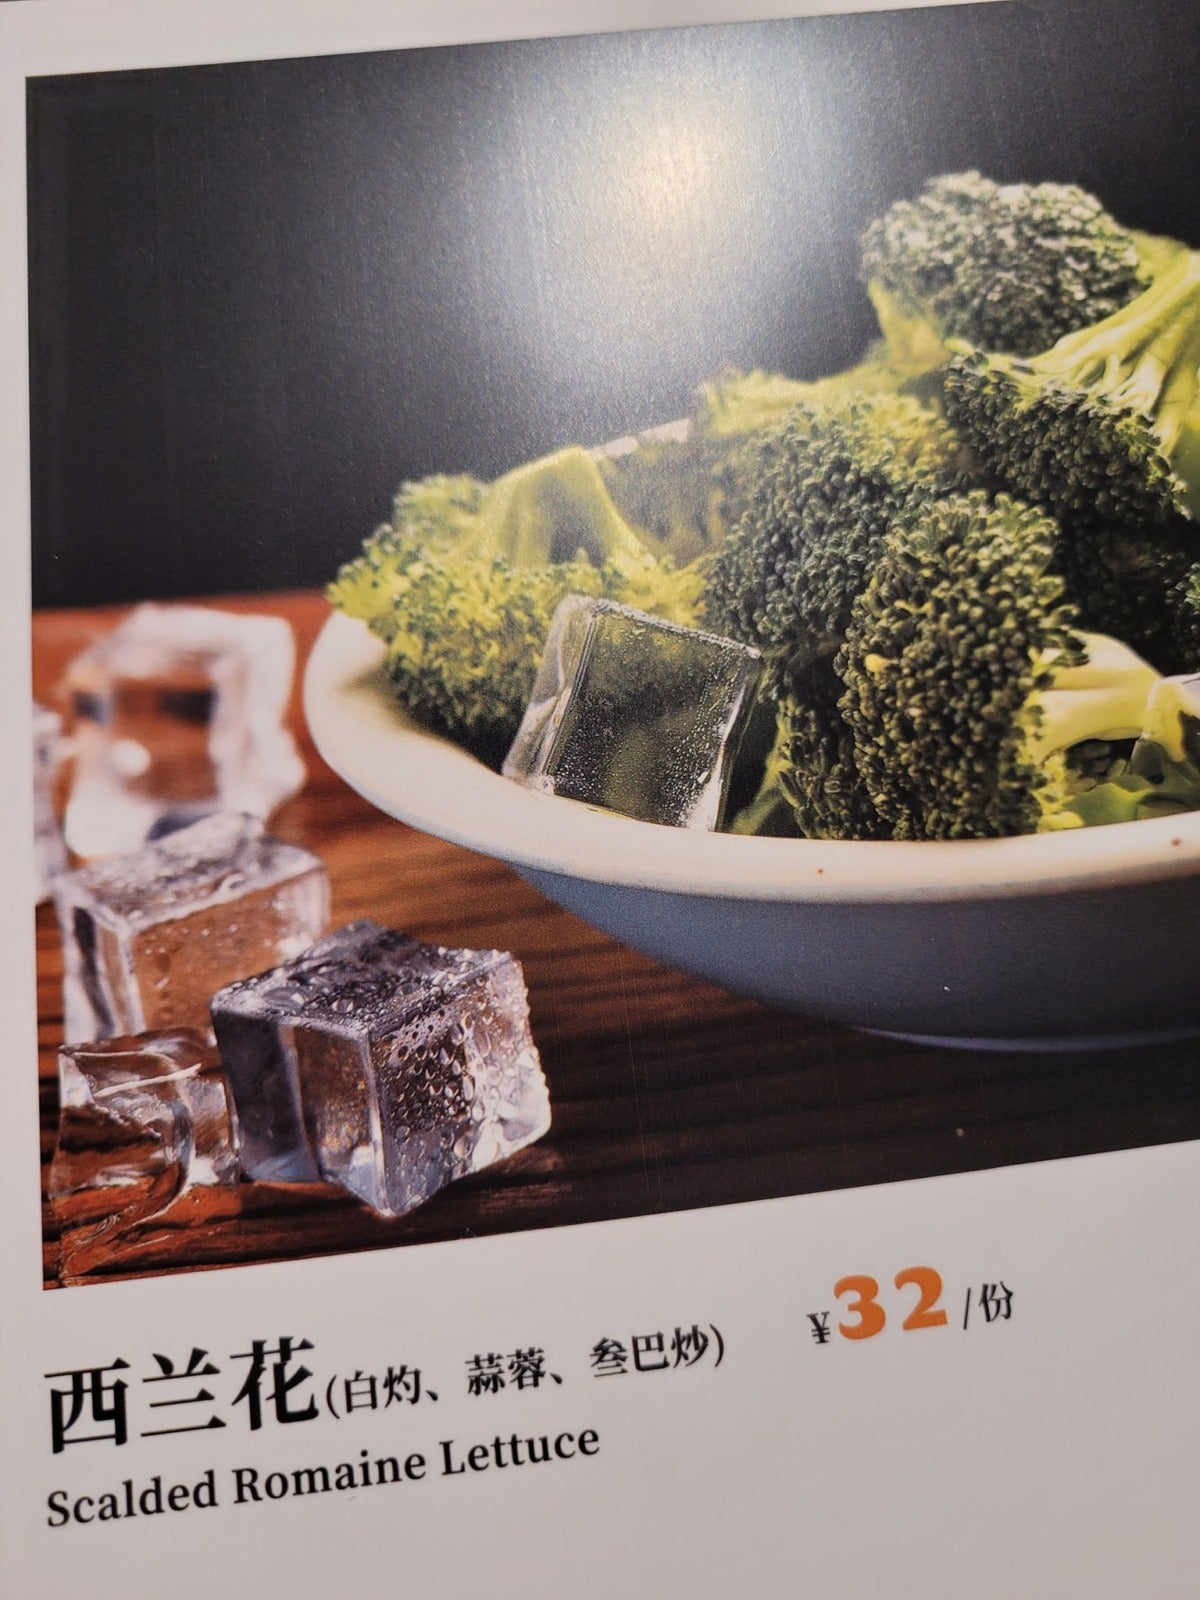 Restaurant In China Typo Translation 7